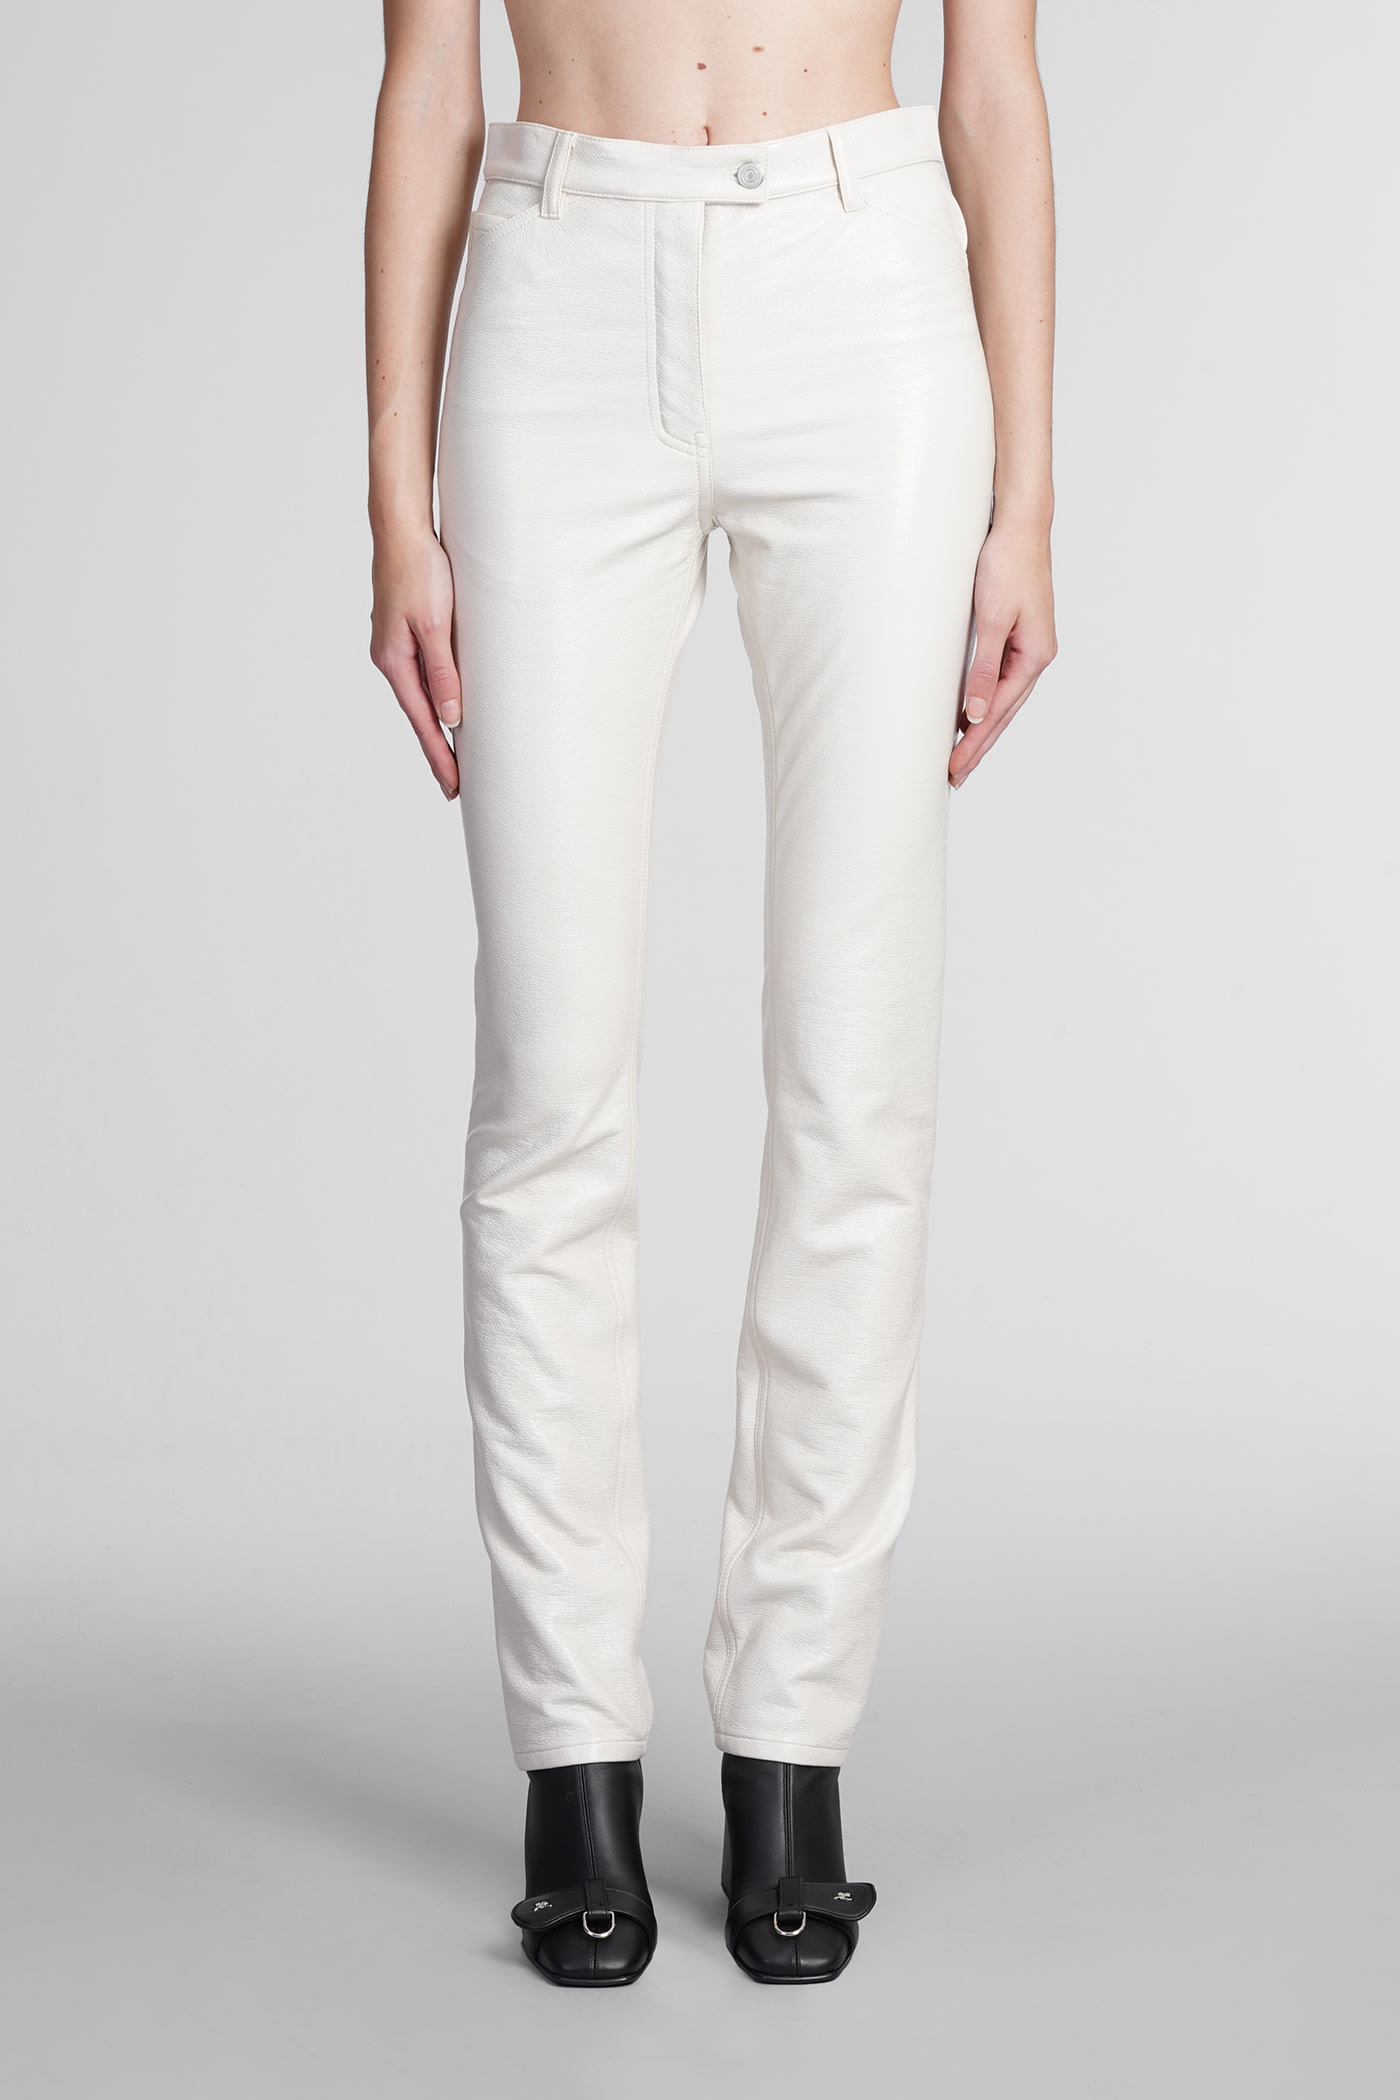 Courrèges Pants In White Cotton